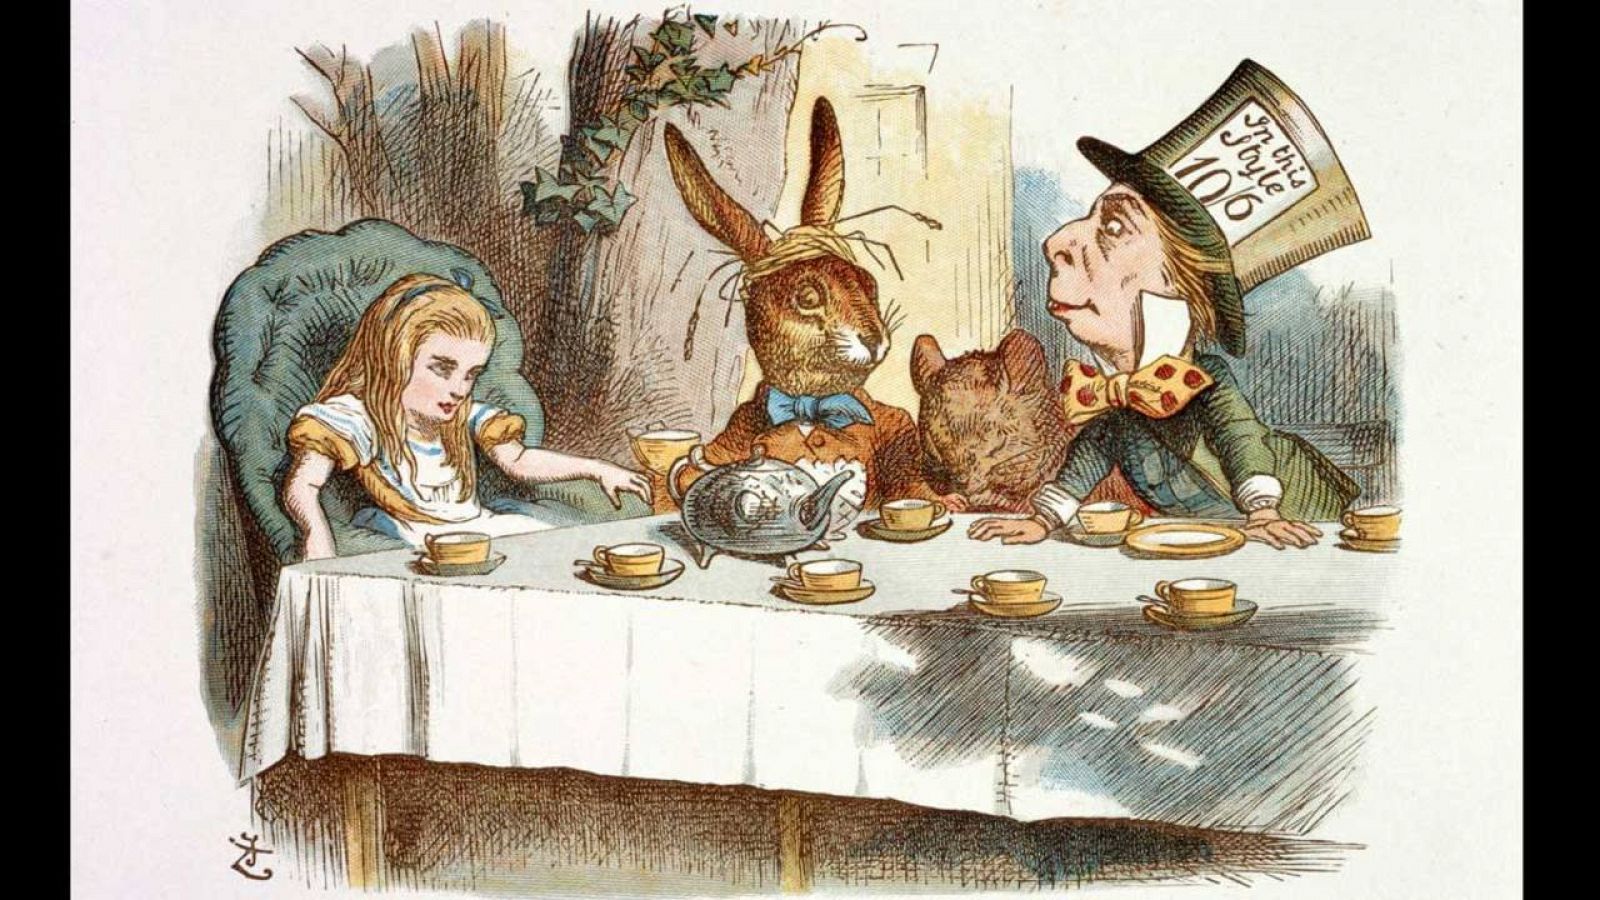 Ilustración de sir John Tenniel para 'Una merienda de locos', con Alicia, la Liebre, el Lirón y el Sombrerero Loco